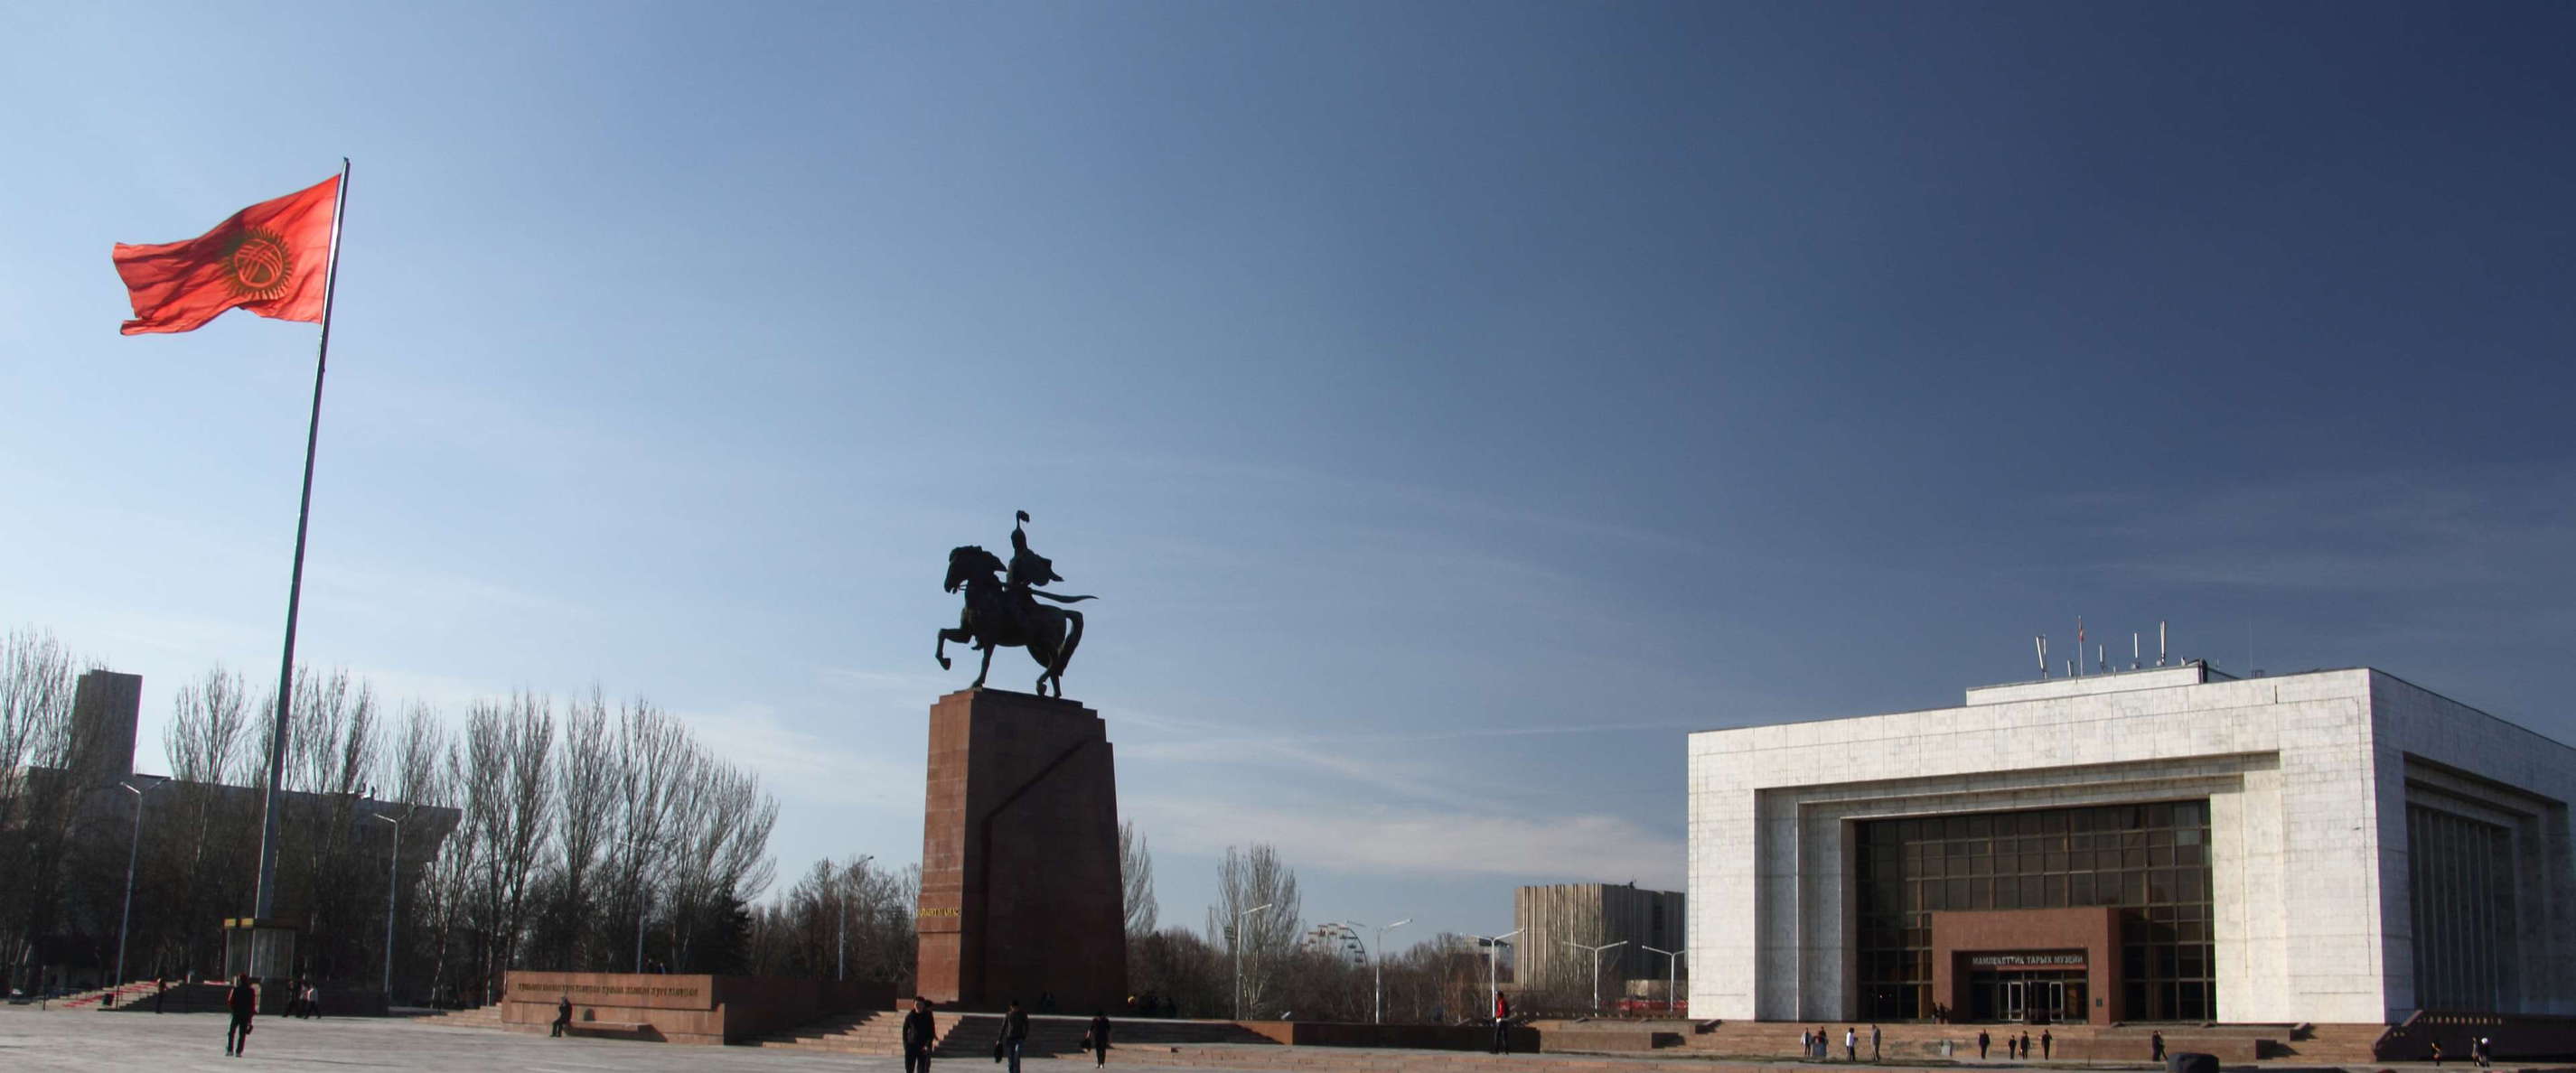 Bishkek  |  Manas Statue and National History Museum